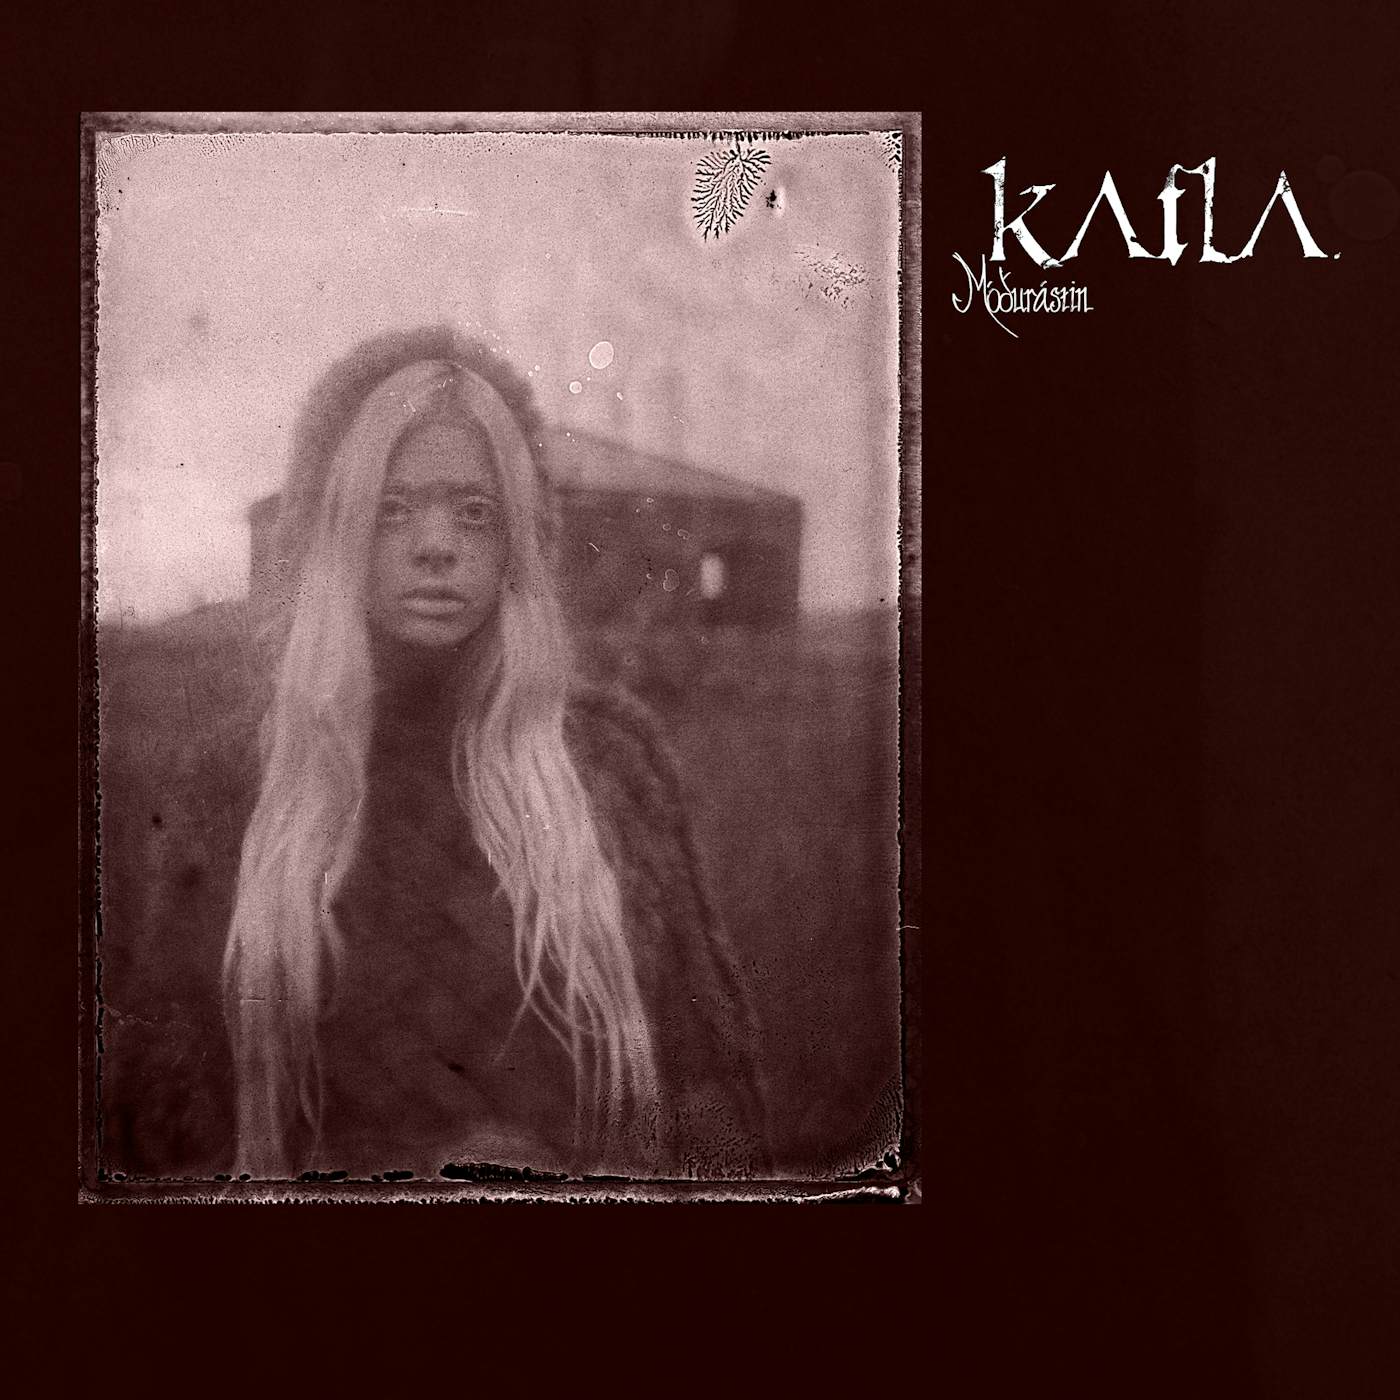 Katla MODURASTIN Vinyl Record